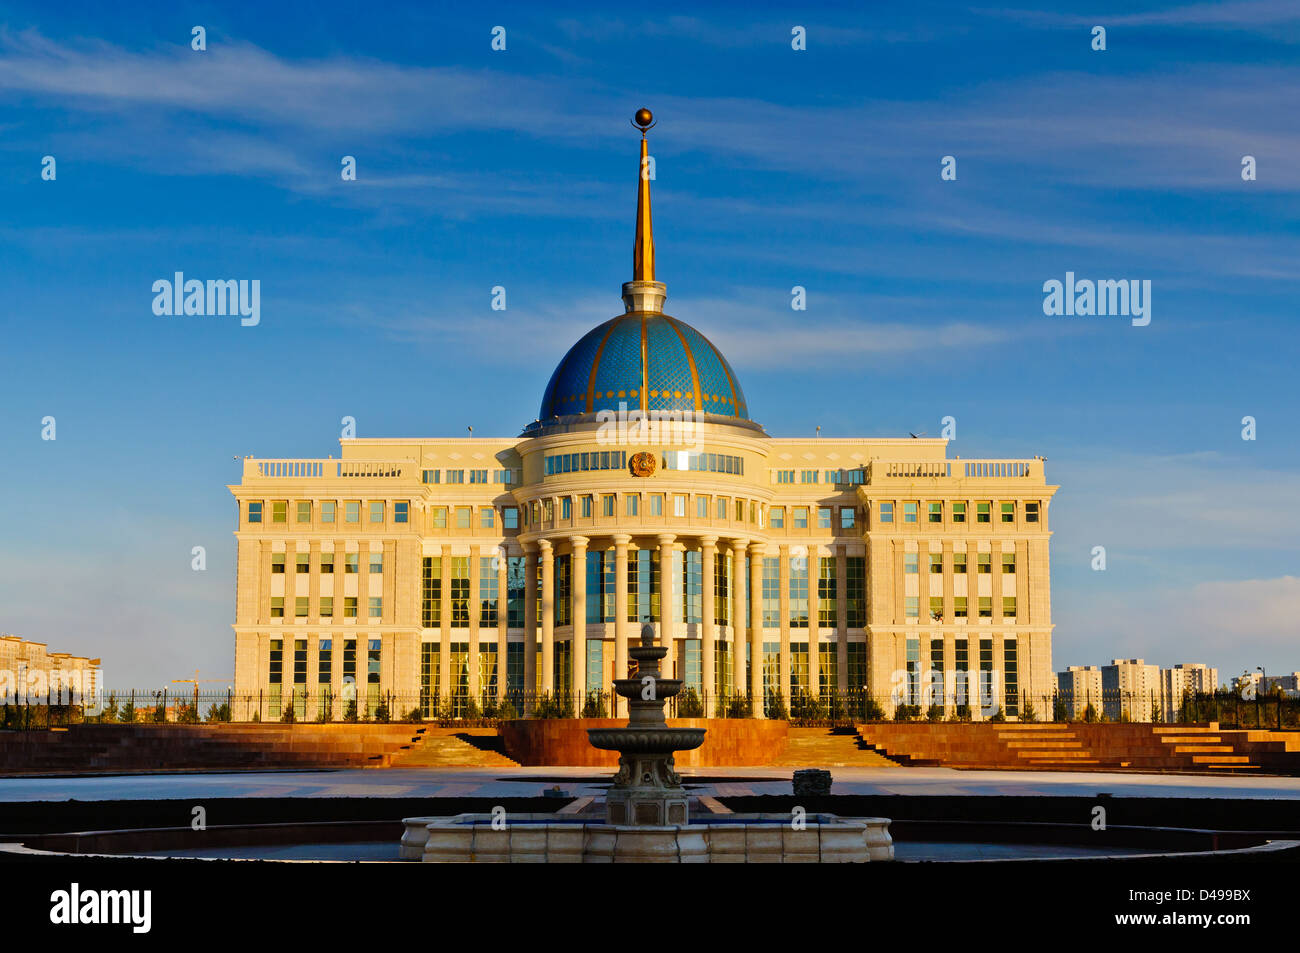 Ak Orda palais présidentiel à Astana, Kazakhstan Banque D'Images